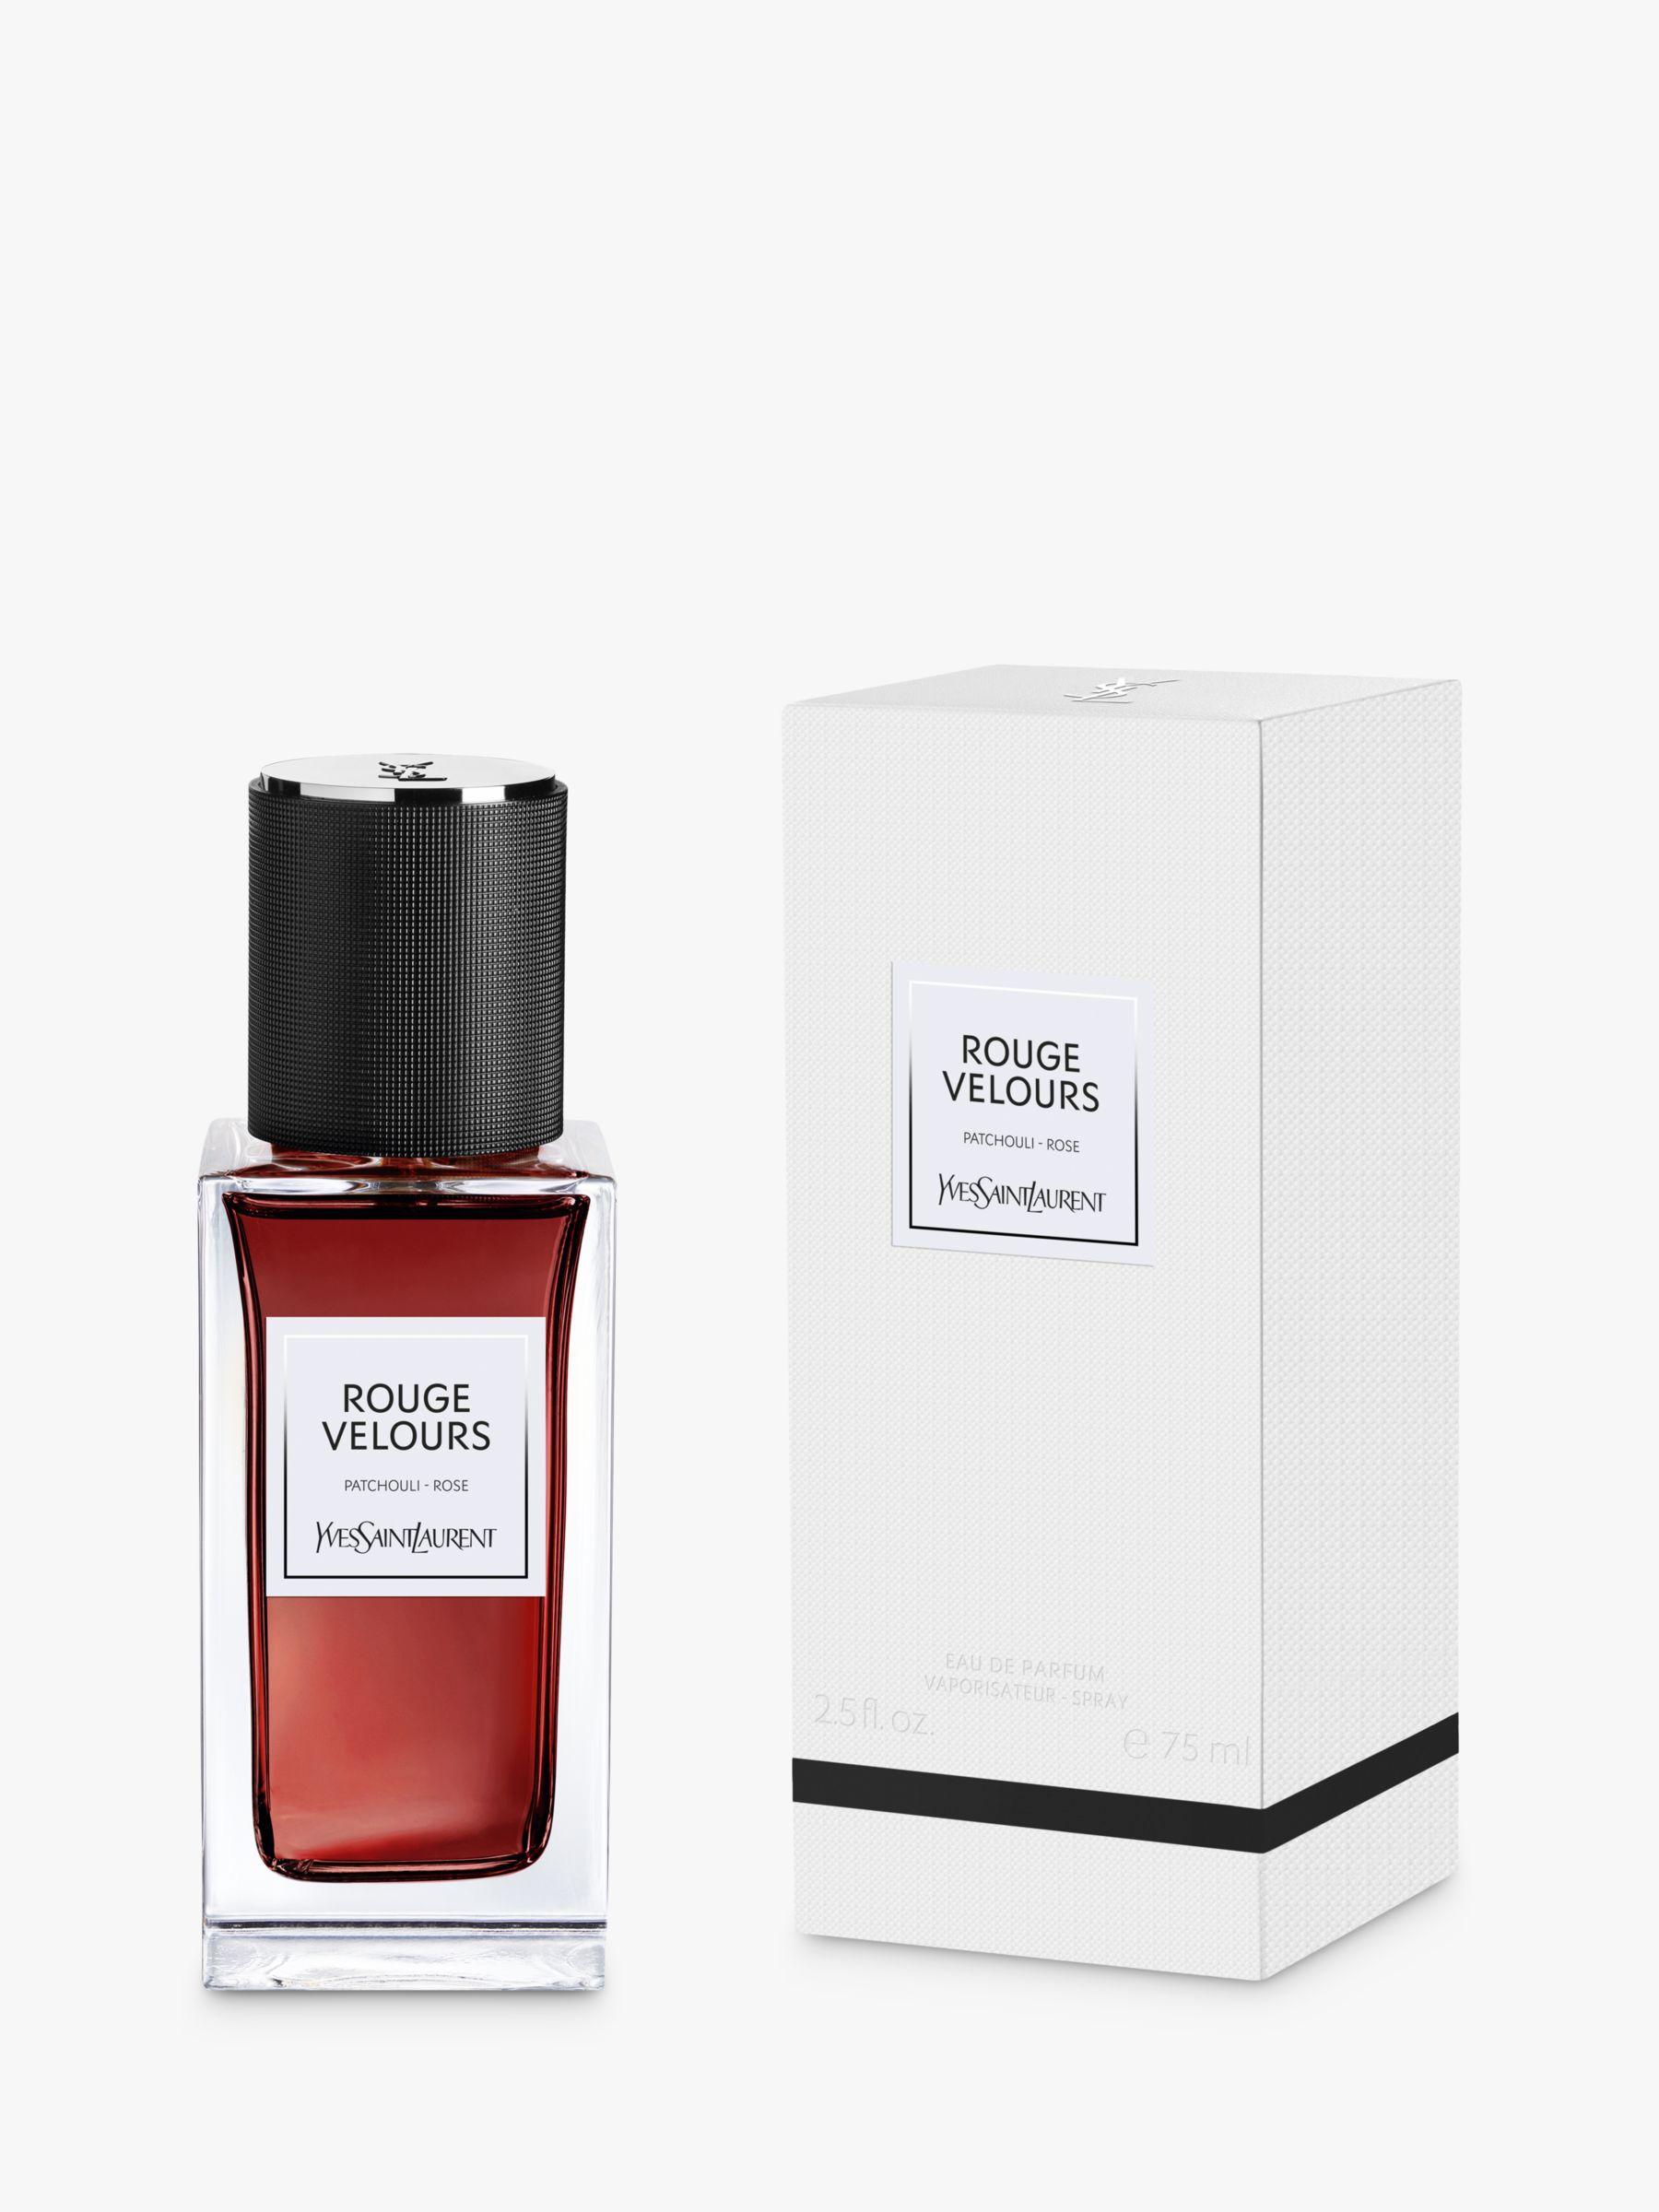 Yves Saint Laurent Rouge Velours Eau de Parfum, 75ml at John Lewis ...